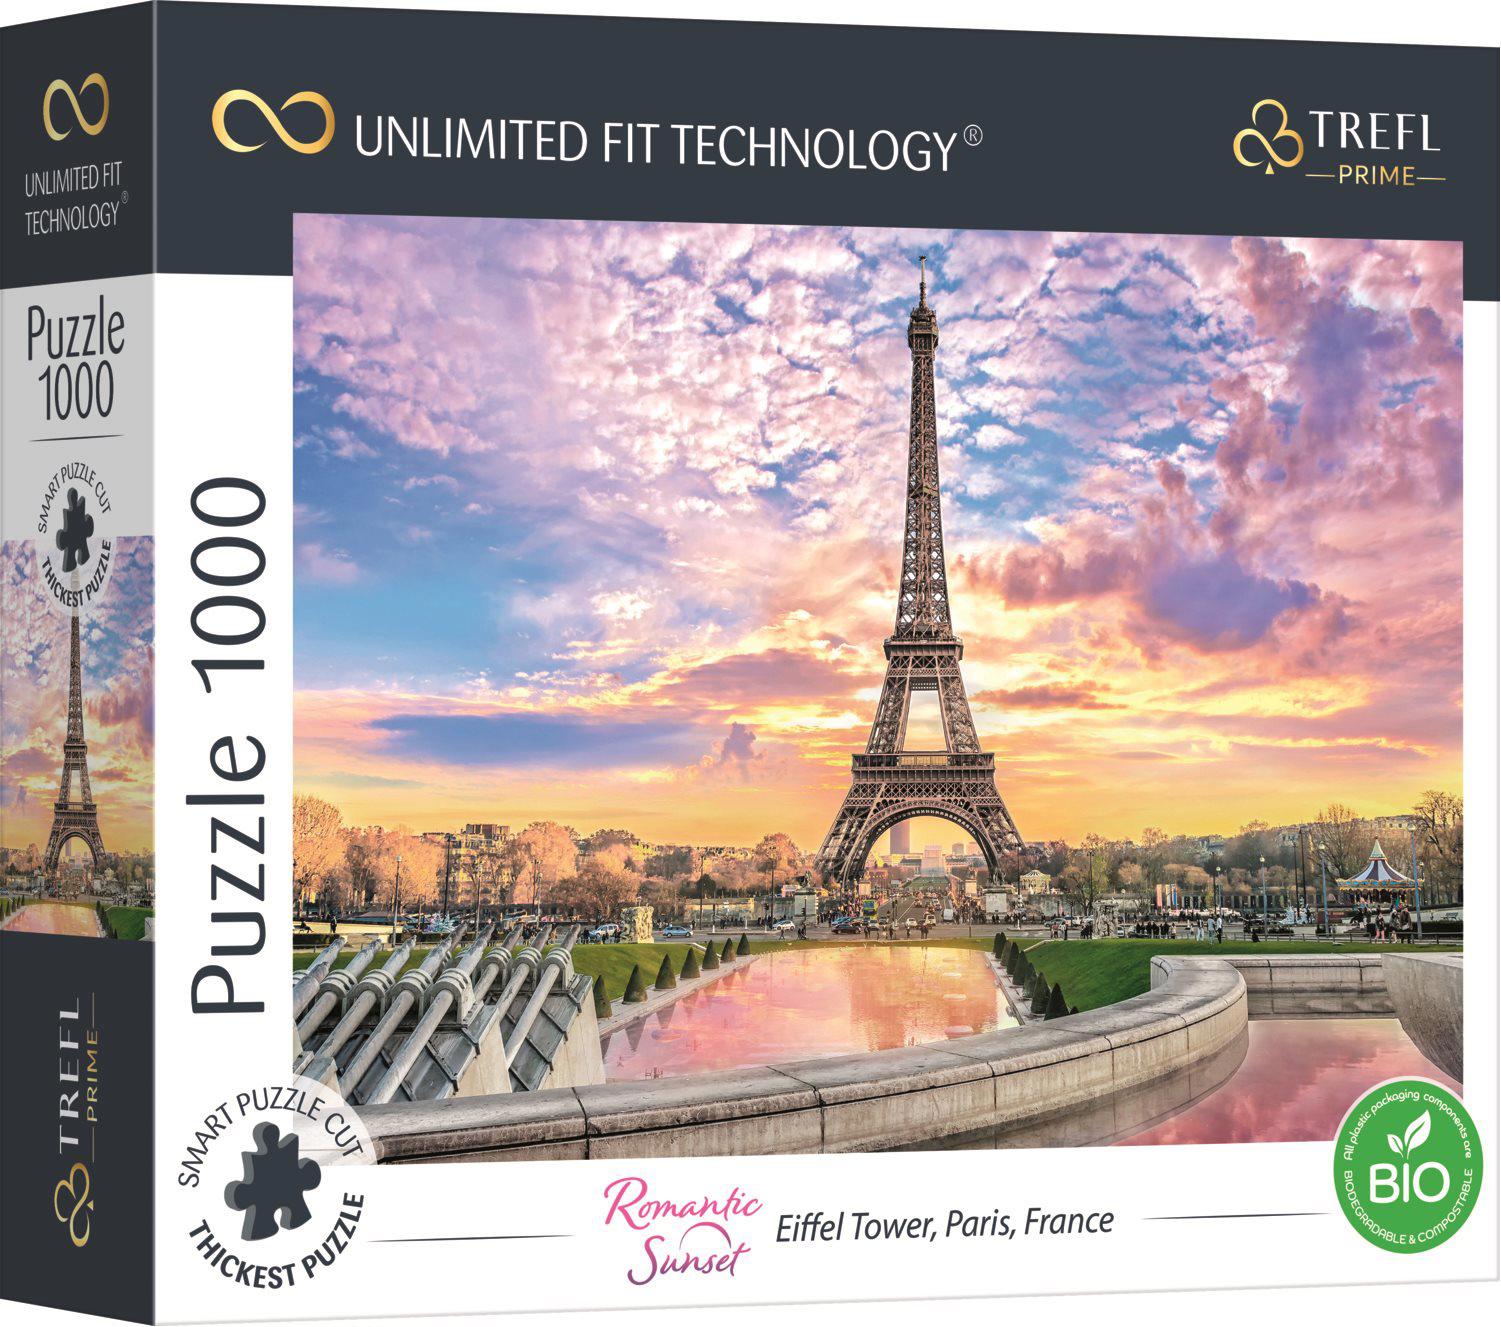 Puzzle Eiffelturm, Paris, Frankreich UFT